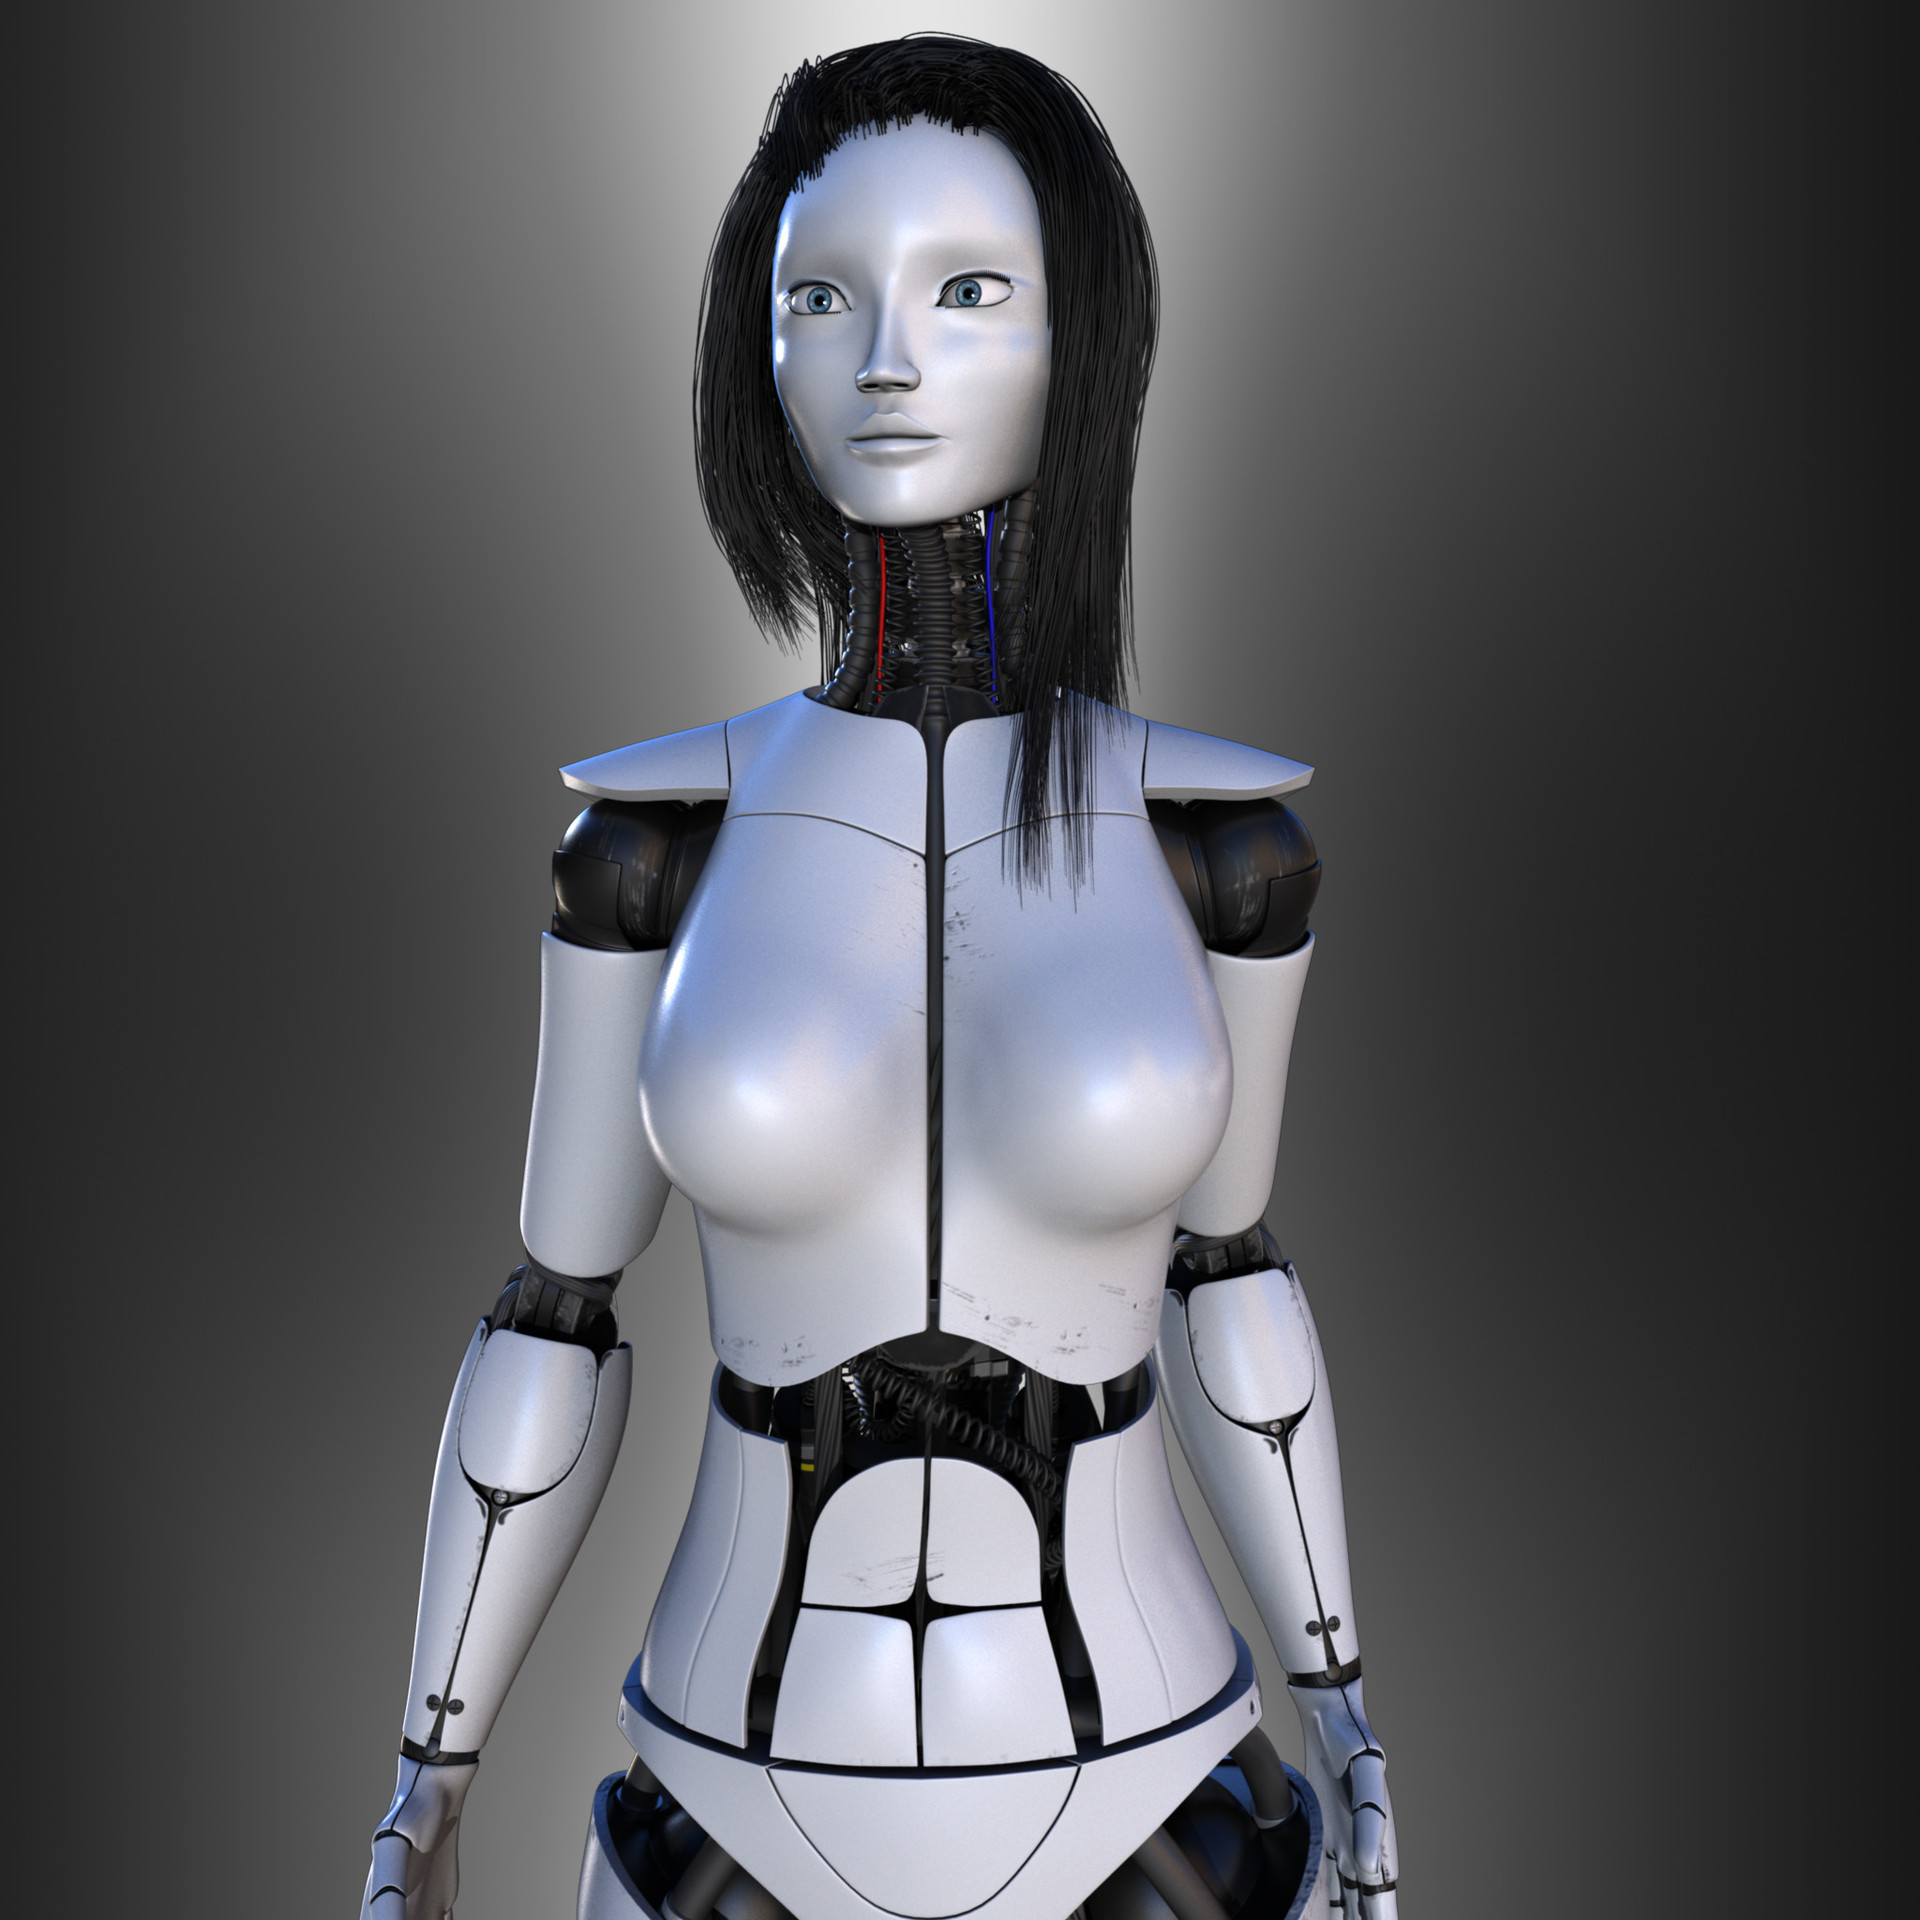 ArtStation - Female Robot